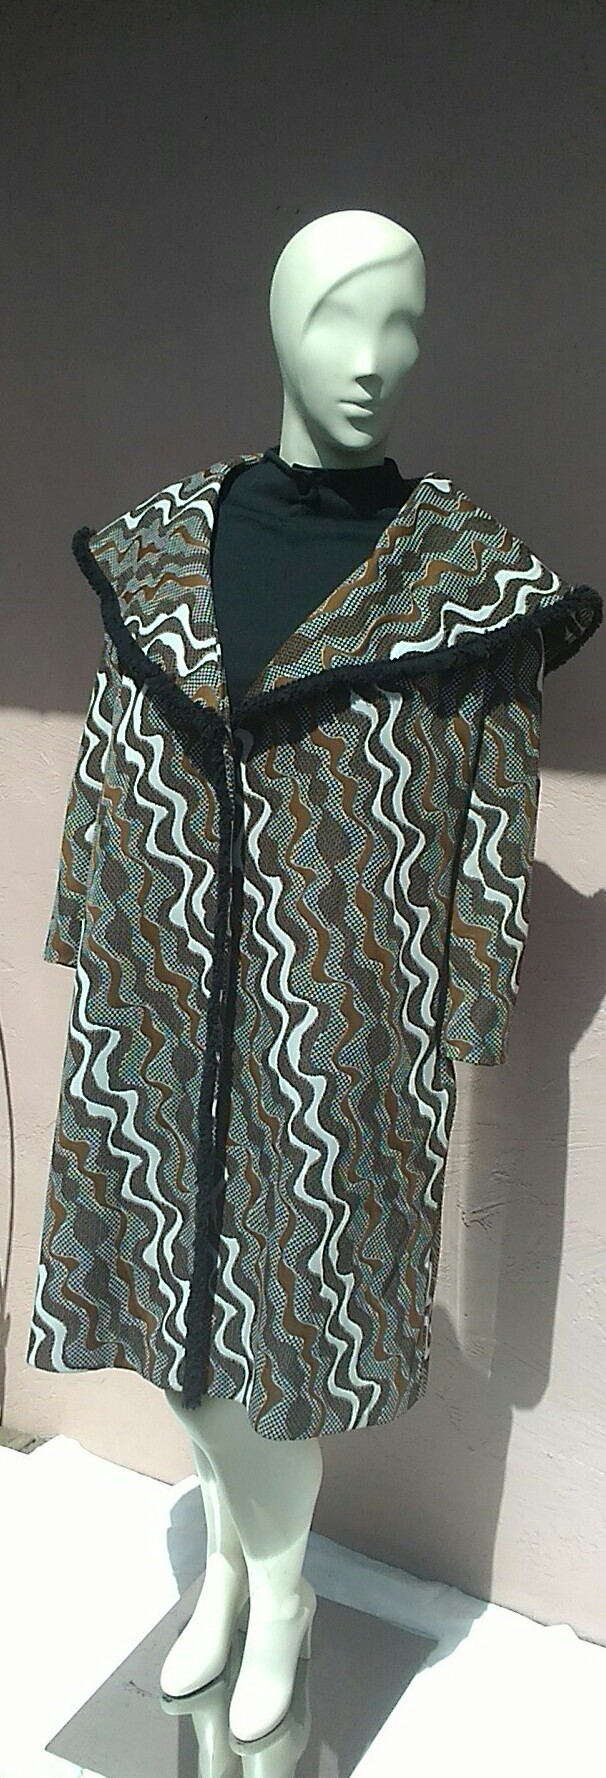 Vintage 1960's Fabulous Geometric Dress Coat Suit Ensemble by Designer Alfred Werber